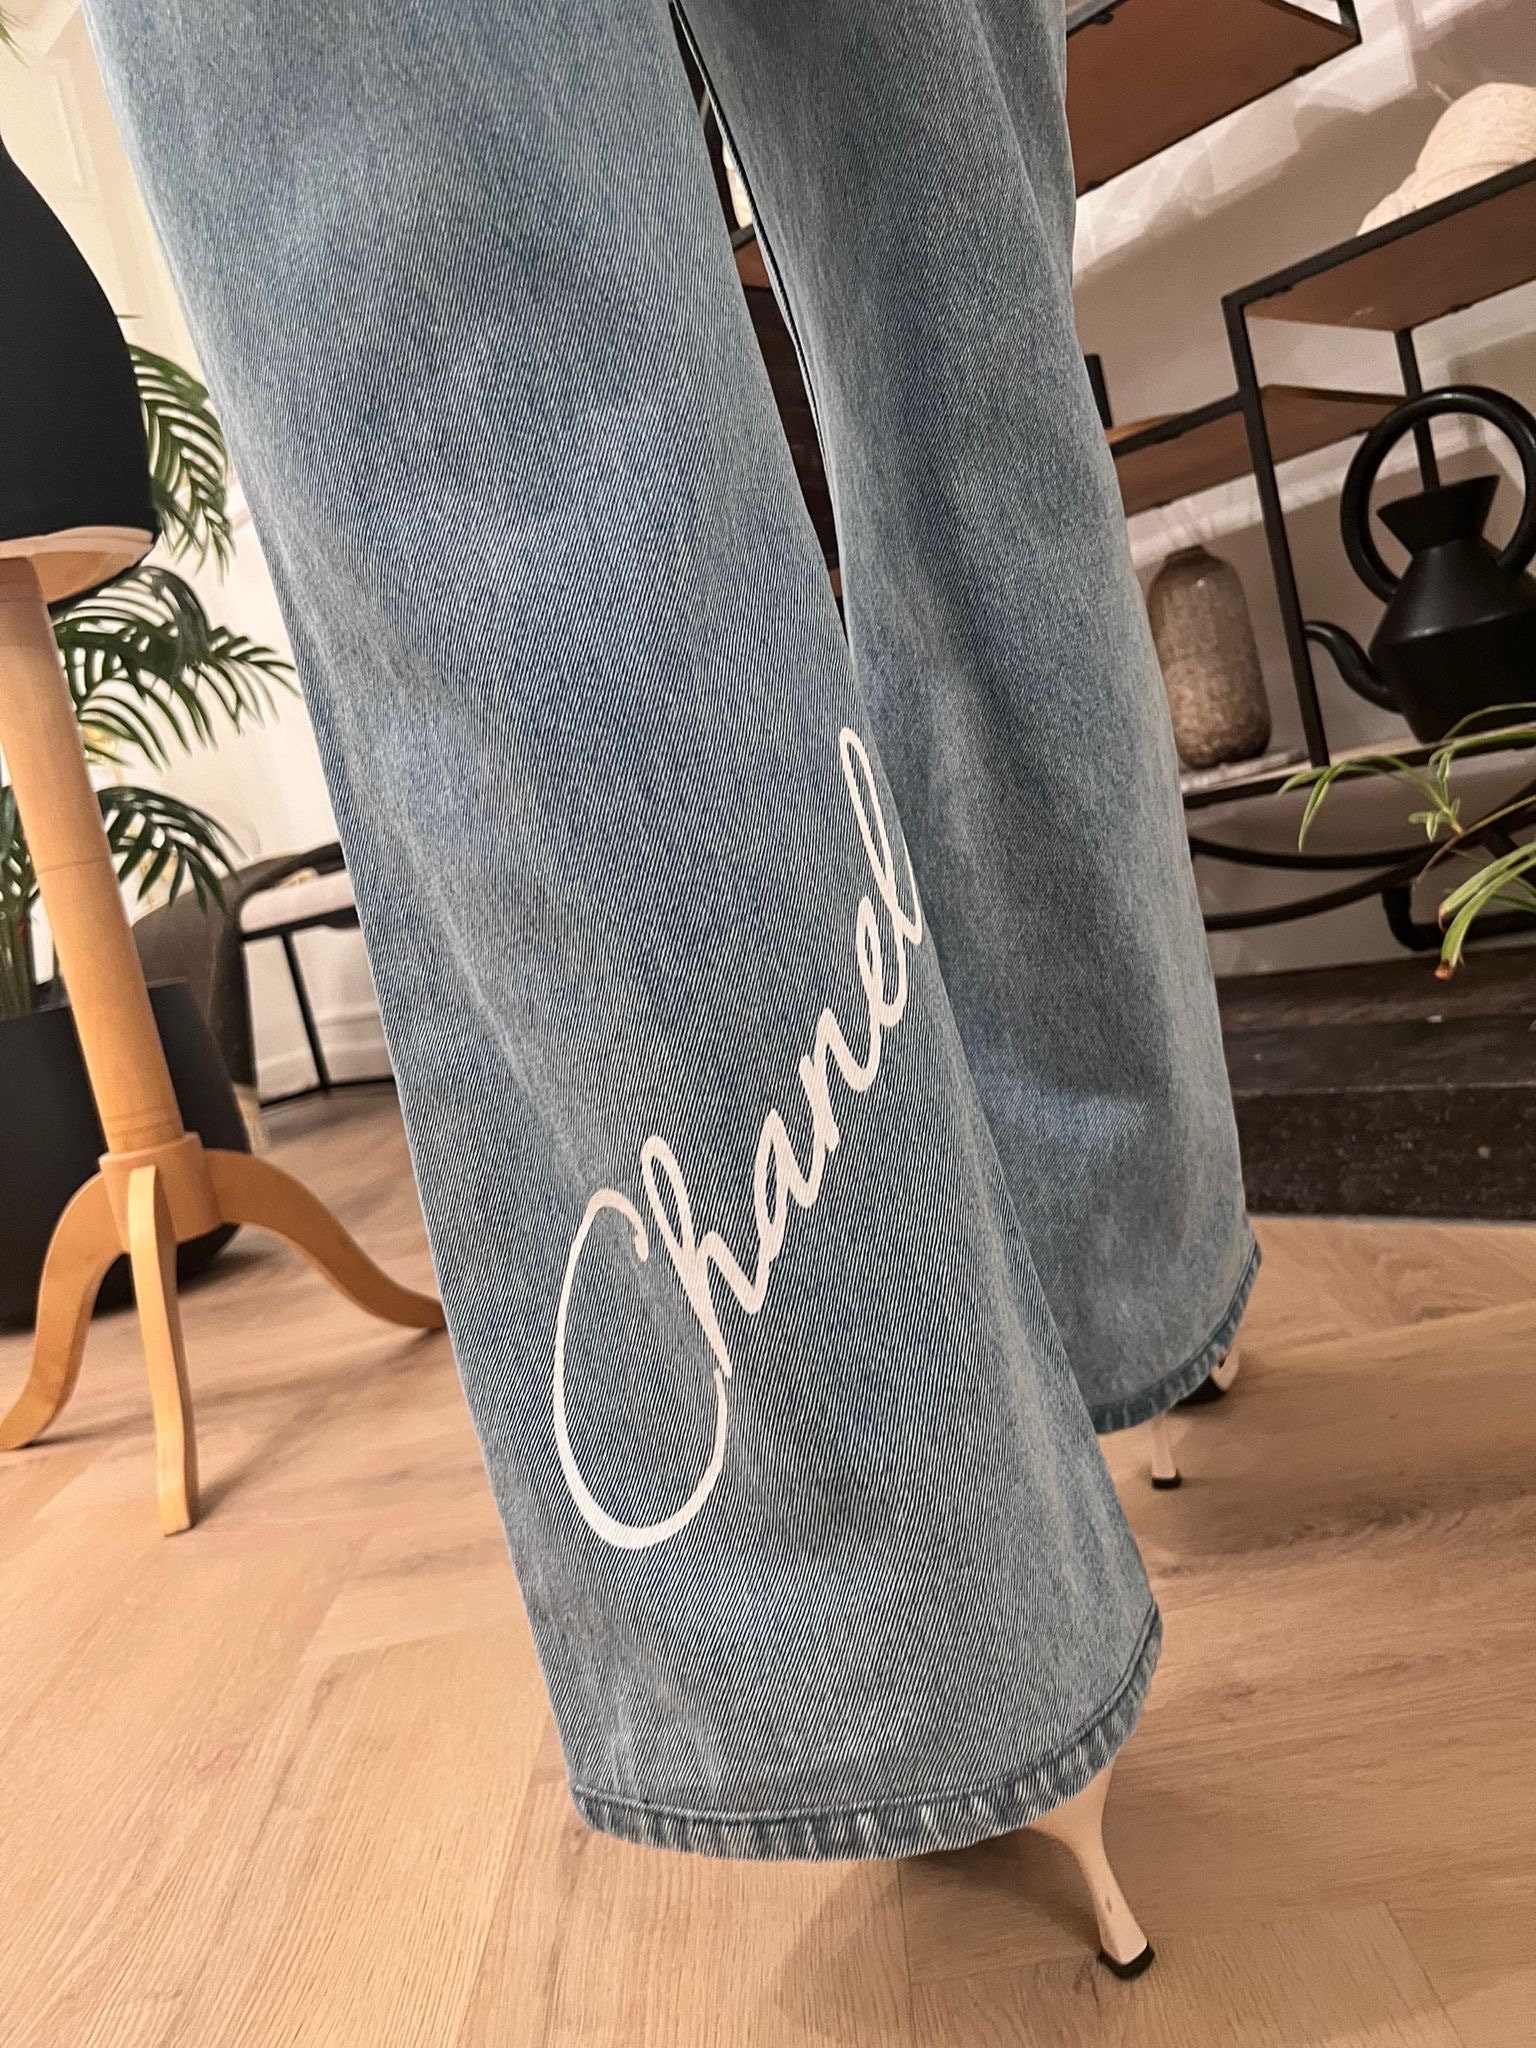 Vintage Chanel Double Pleated Dress Pants 28x30 80s Eclair Zipper